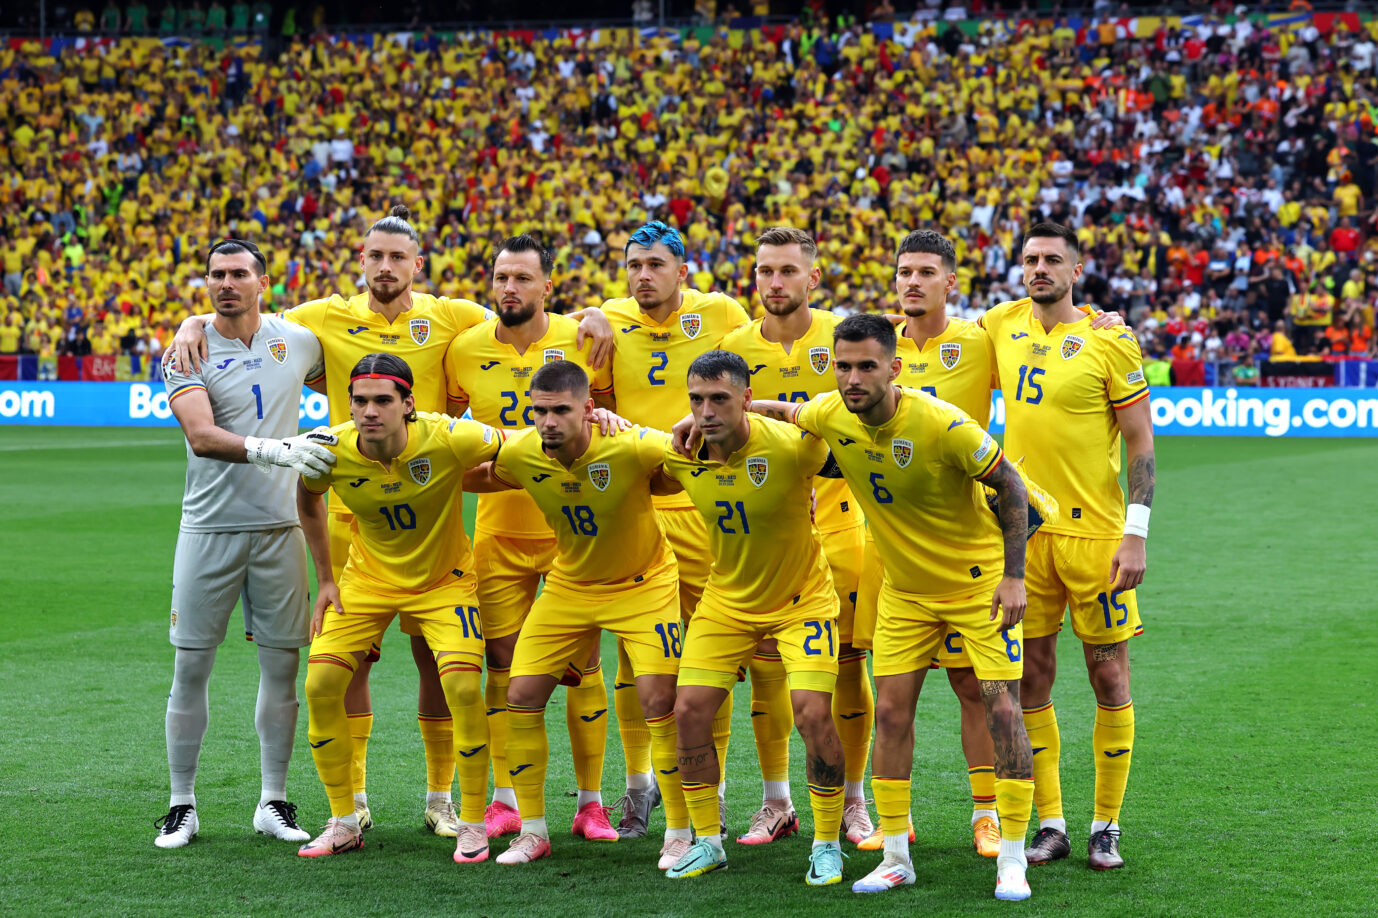 Die rumänische Nationalmannschaft vor dem Achtelfinalspiel gegen Holland. Danach war die Fußball-EM für sie beendet.